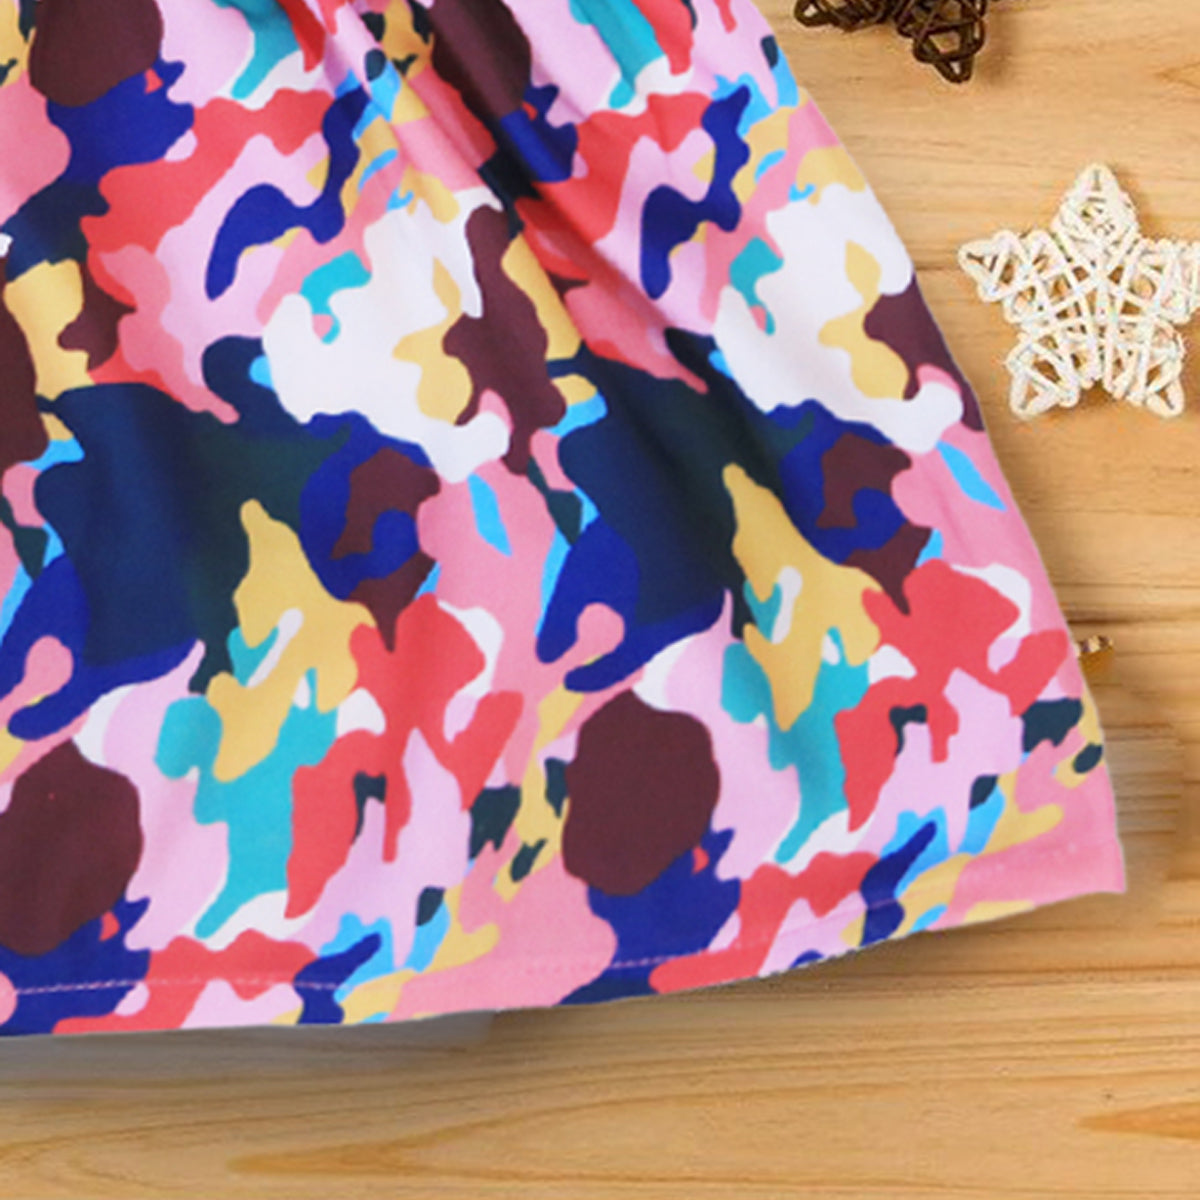 BabyGirl's Stylish Cotton Multicolor Designer Frocks & Dresses for Kids.